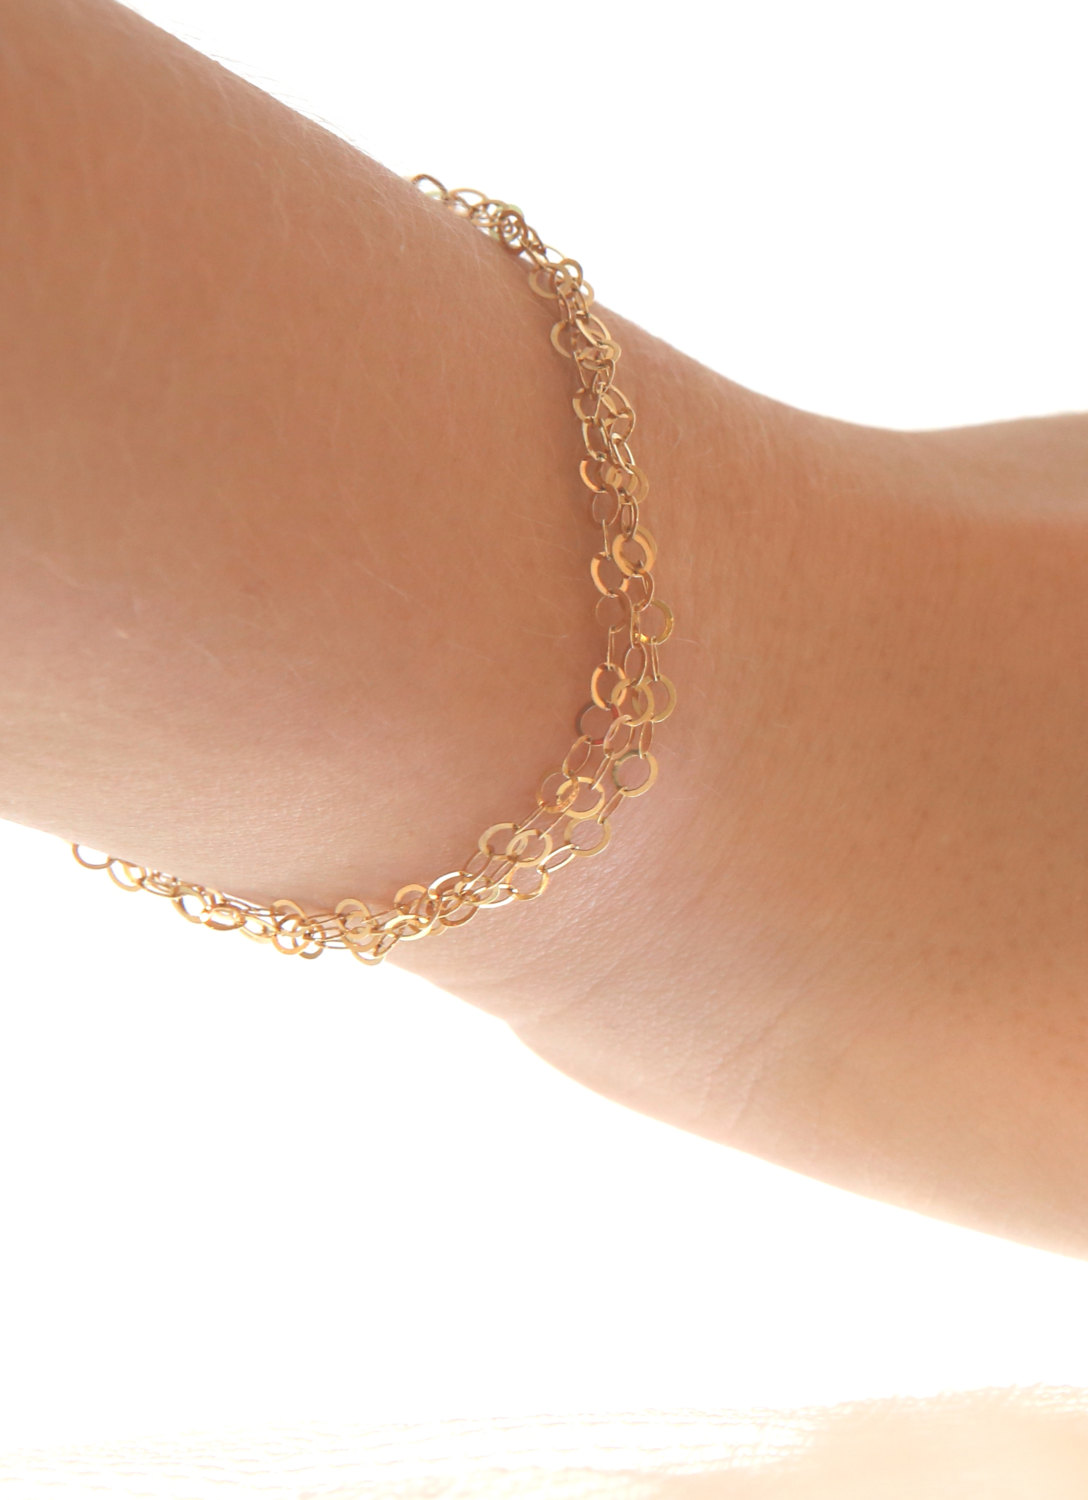 Gold Bracelet, Chain Bracelet, Simple Gold Bracelet, Delicate Bracelet, Dainty Bracelet, Gold Filled A503